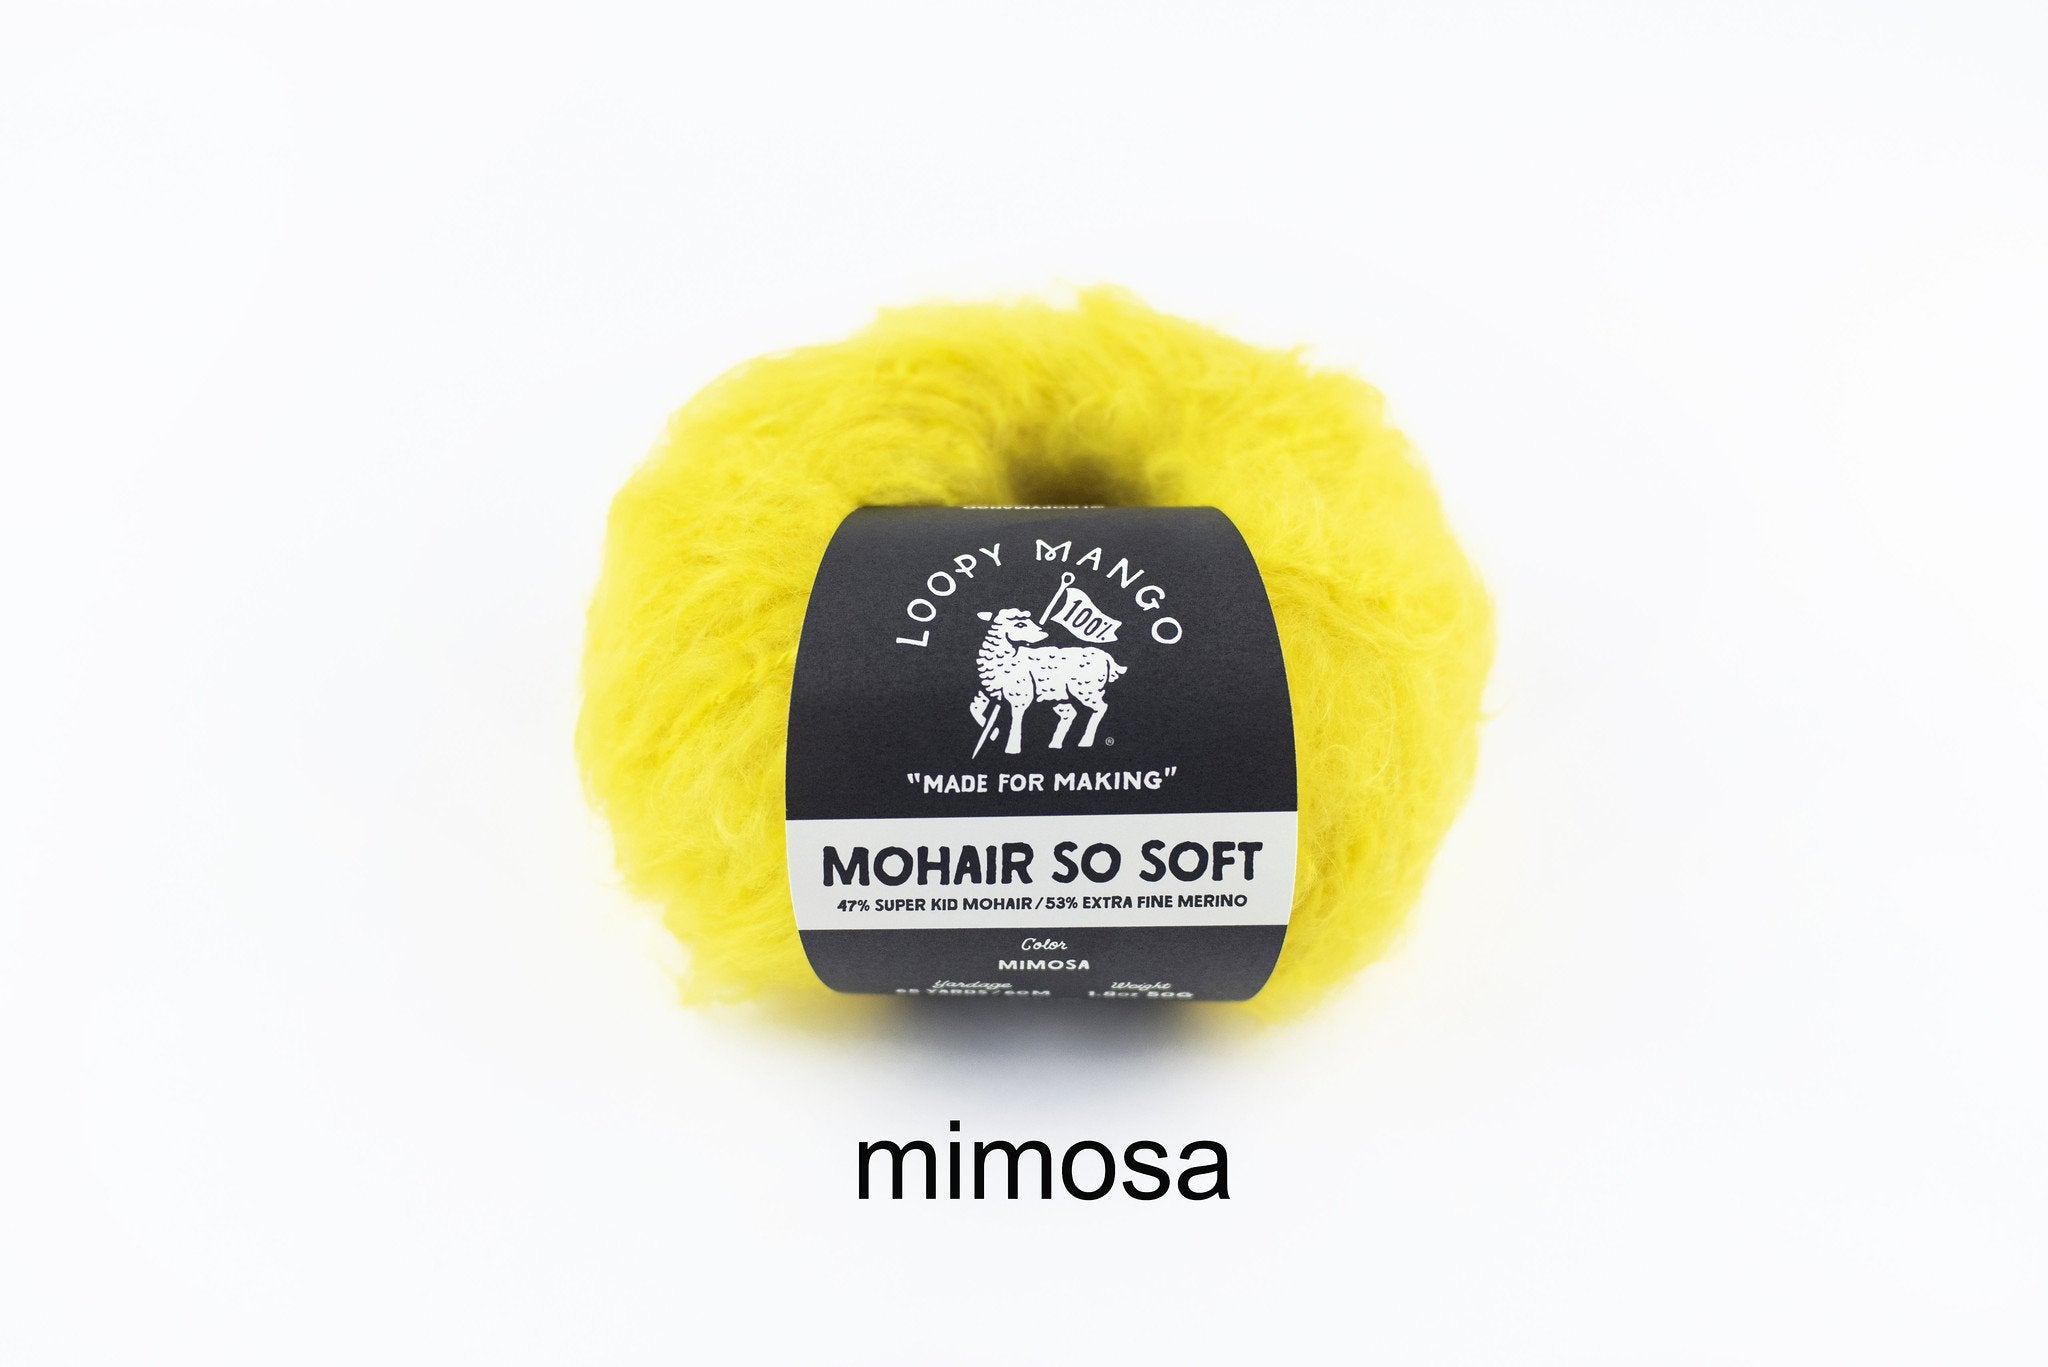 Mimosa_t_1024x1024_2x_49f71496-9a13-48e7-be9f-b6f353d304cf.jpg